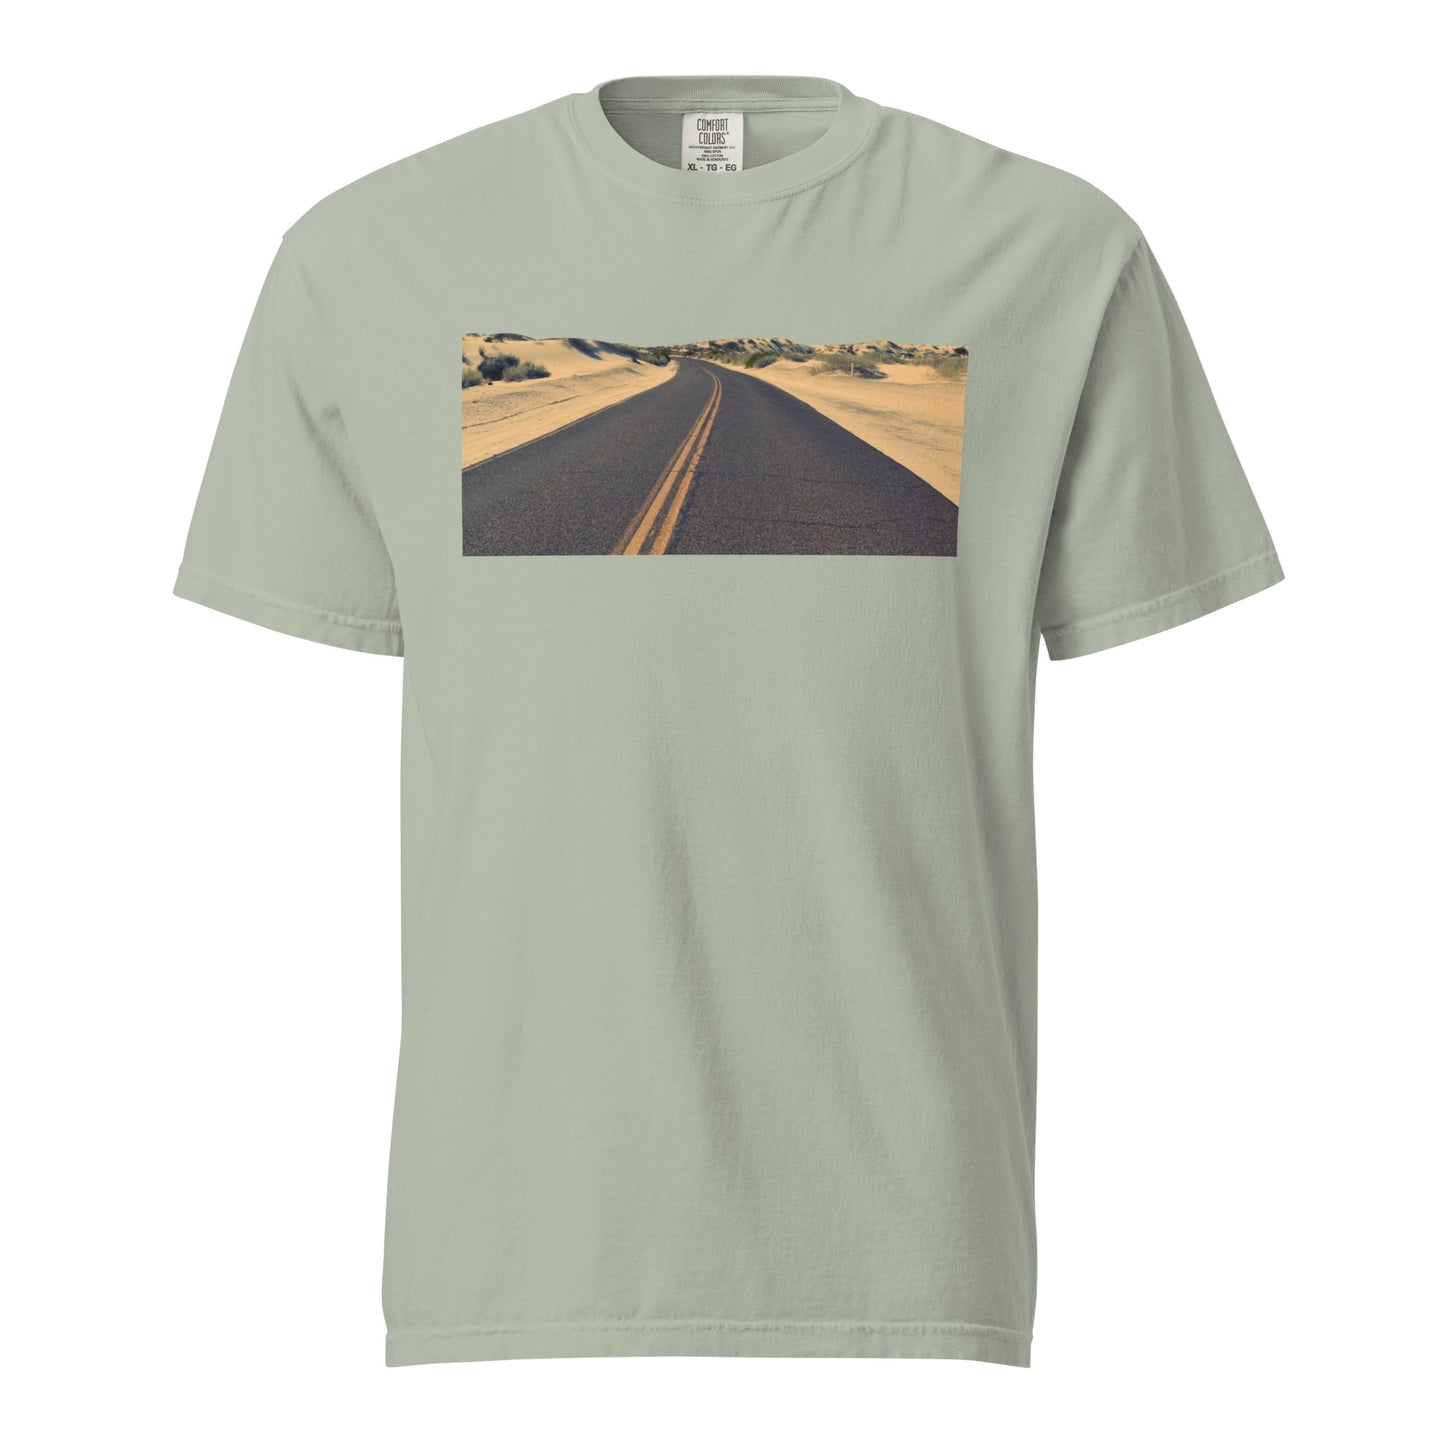 Ruta Comfort Tee: Camiseta Unisex con Paisaje de Carretera